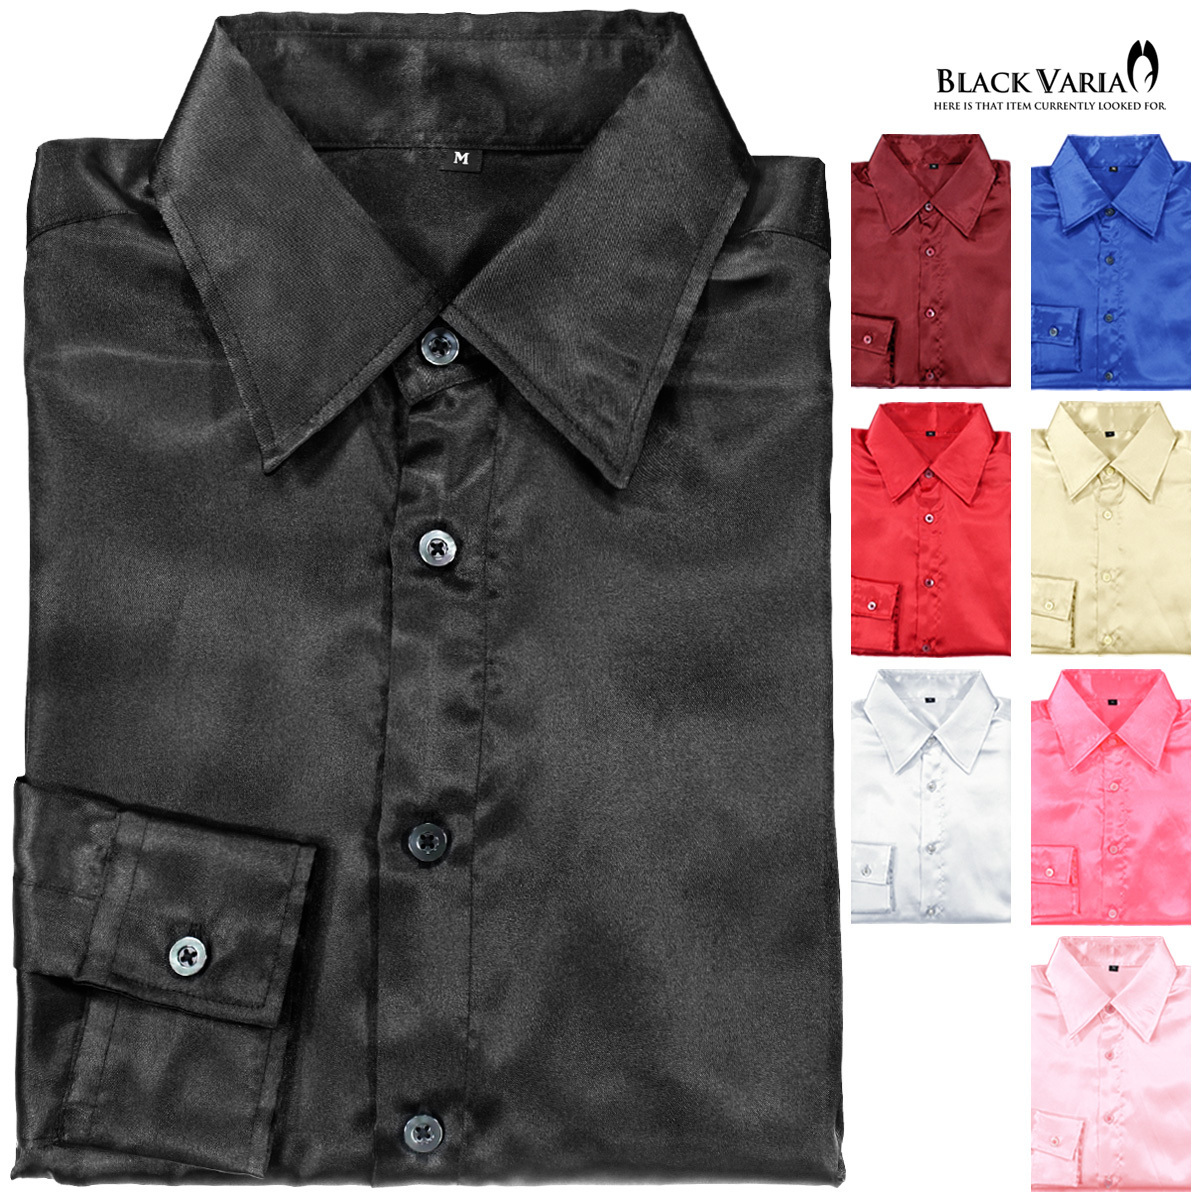 ネコポス可★141405-bk BLACK VARIA 光沢サテン 無地 スリム レギュラーカラードレスシャツ メンズ(サテンブラック黒) SS 衣装_画像4